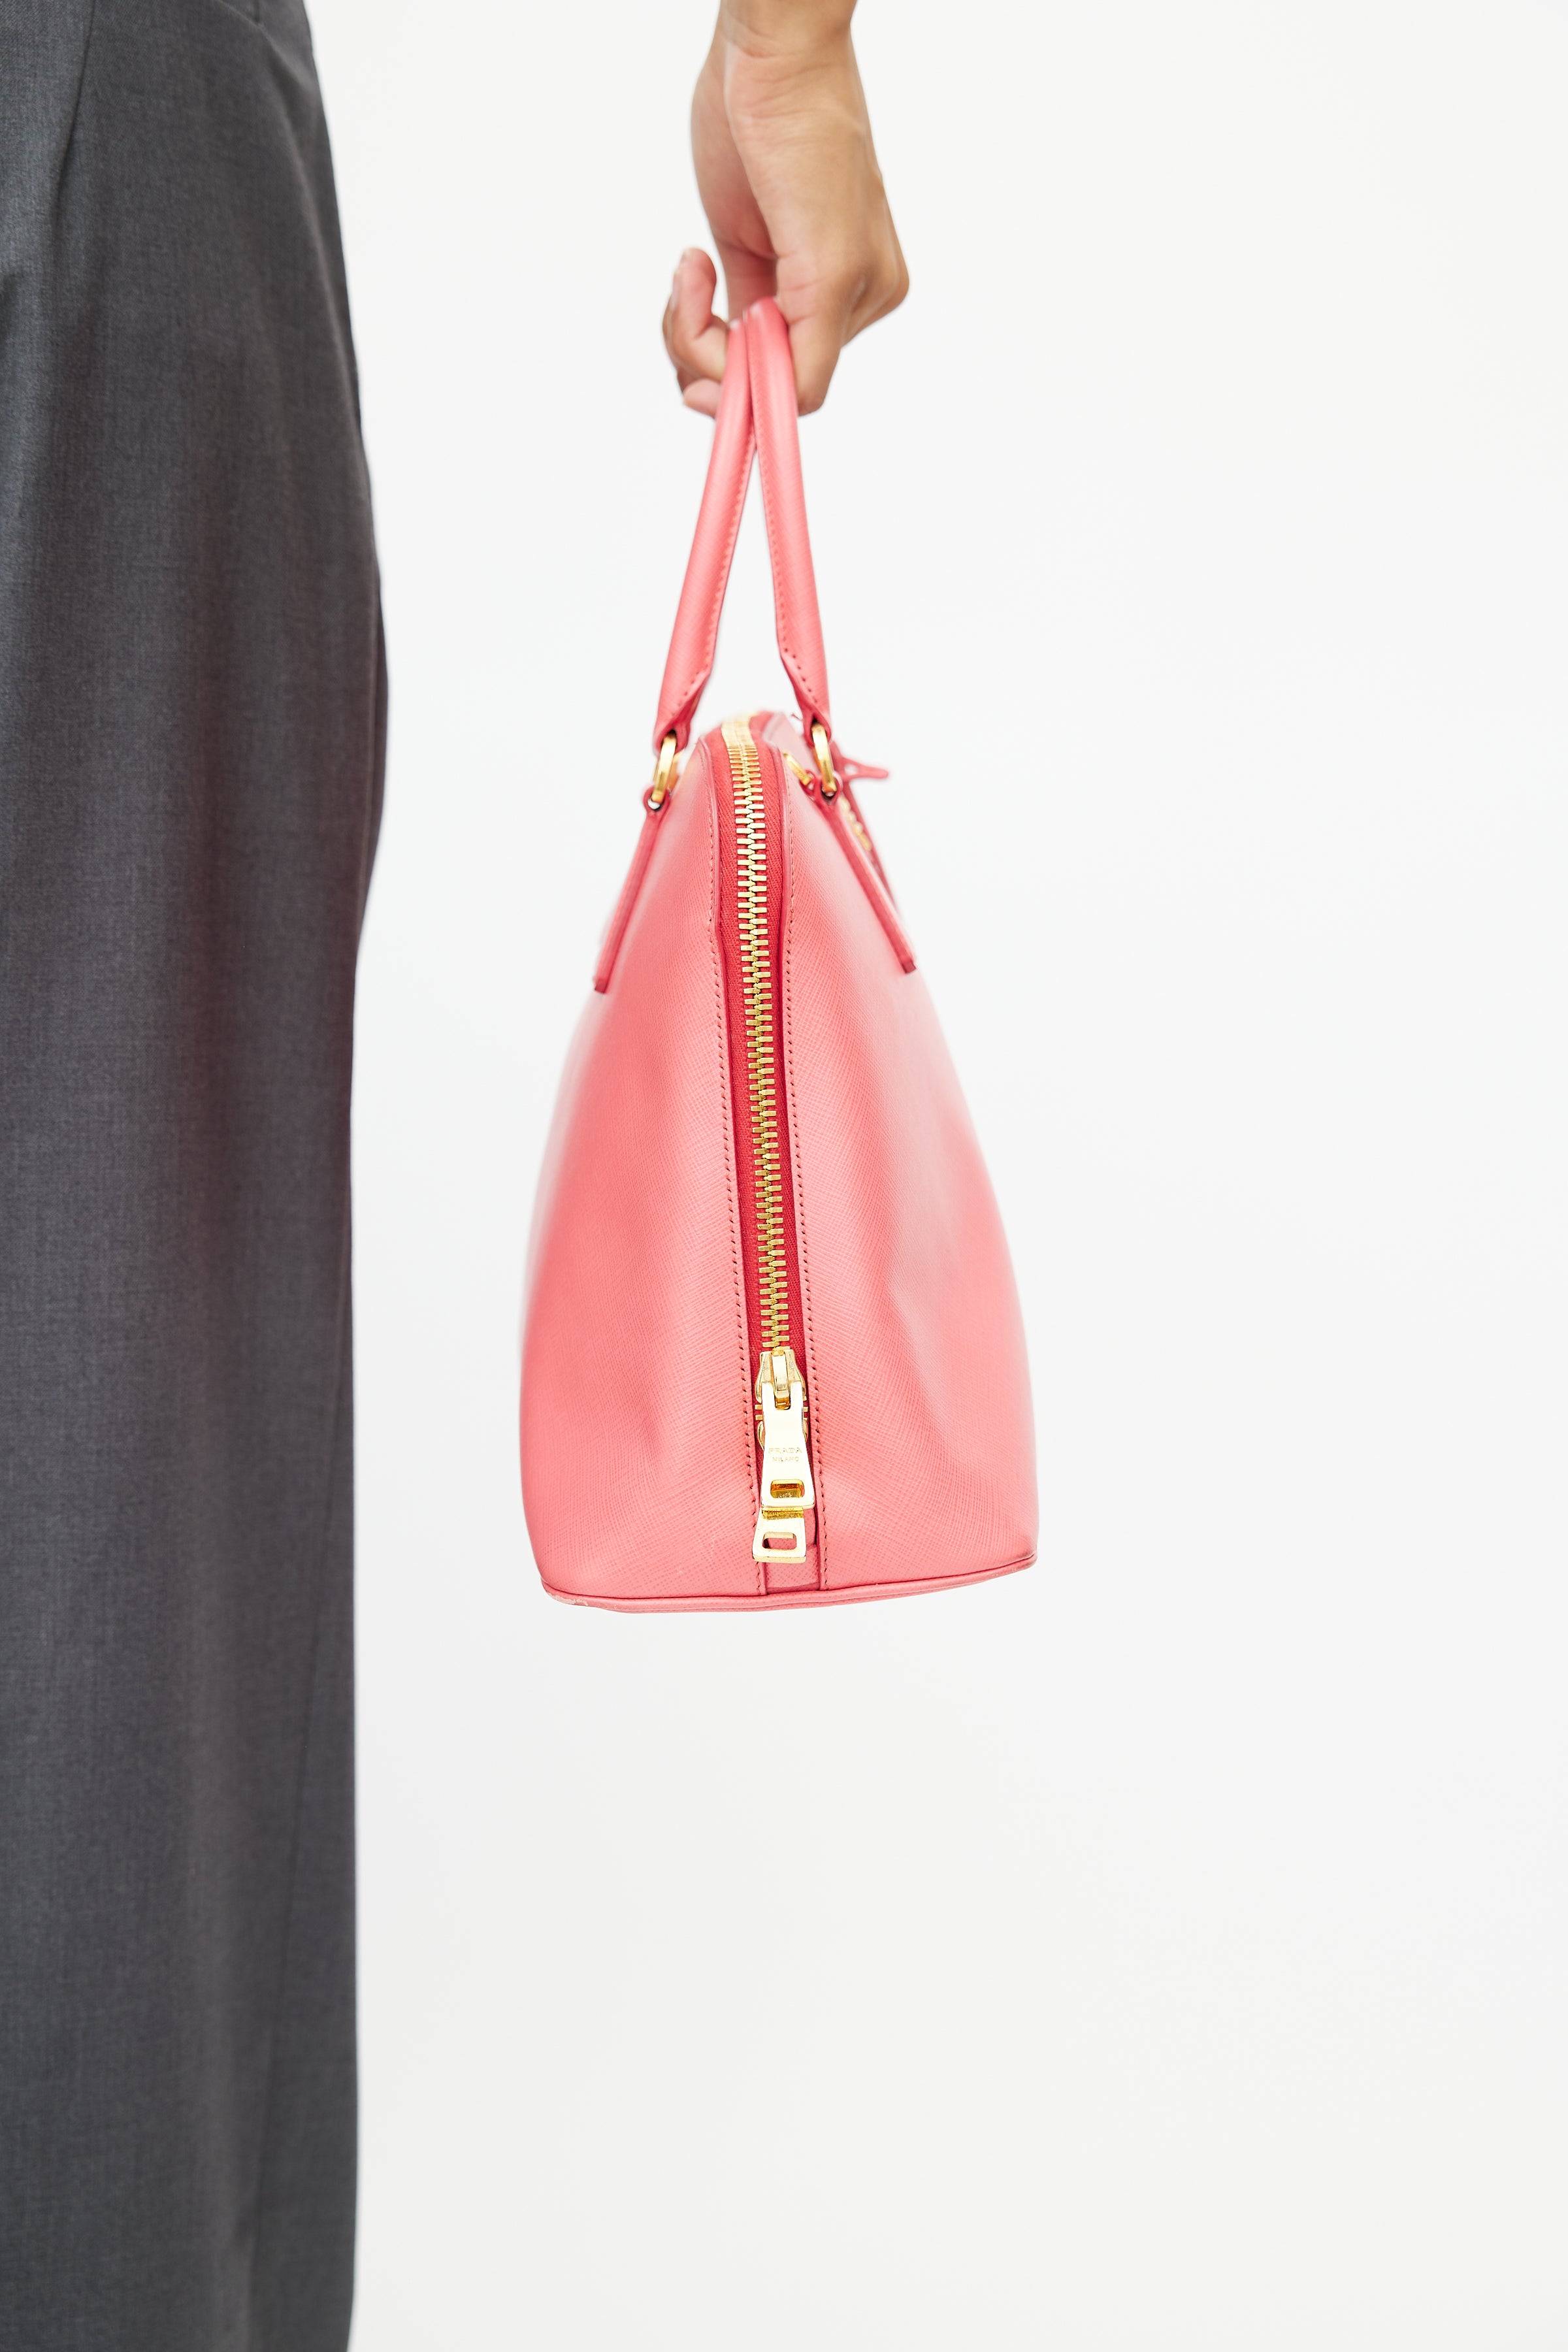 Prada pink saffiano Promenade bag 🌸#pradabags . . Find additional